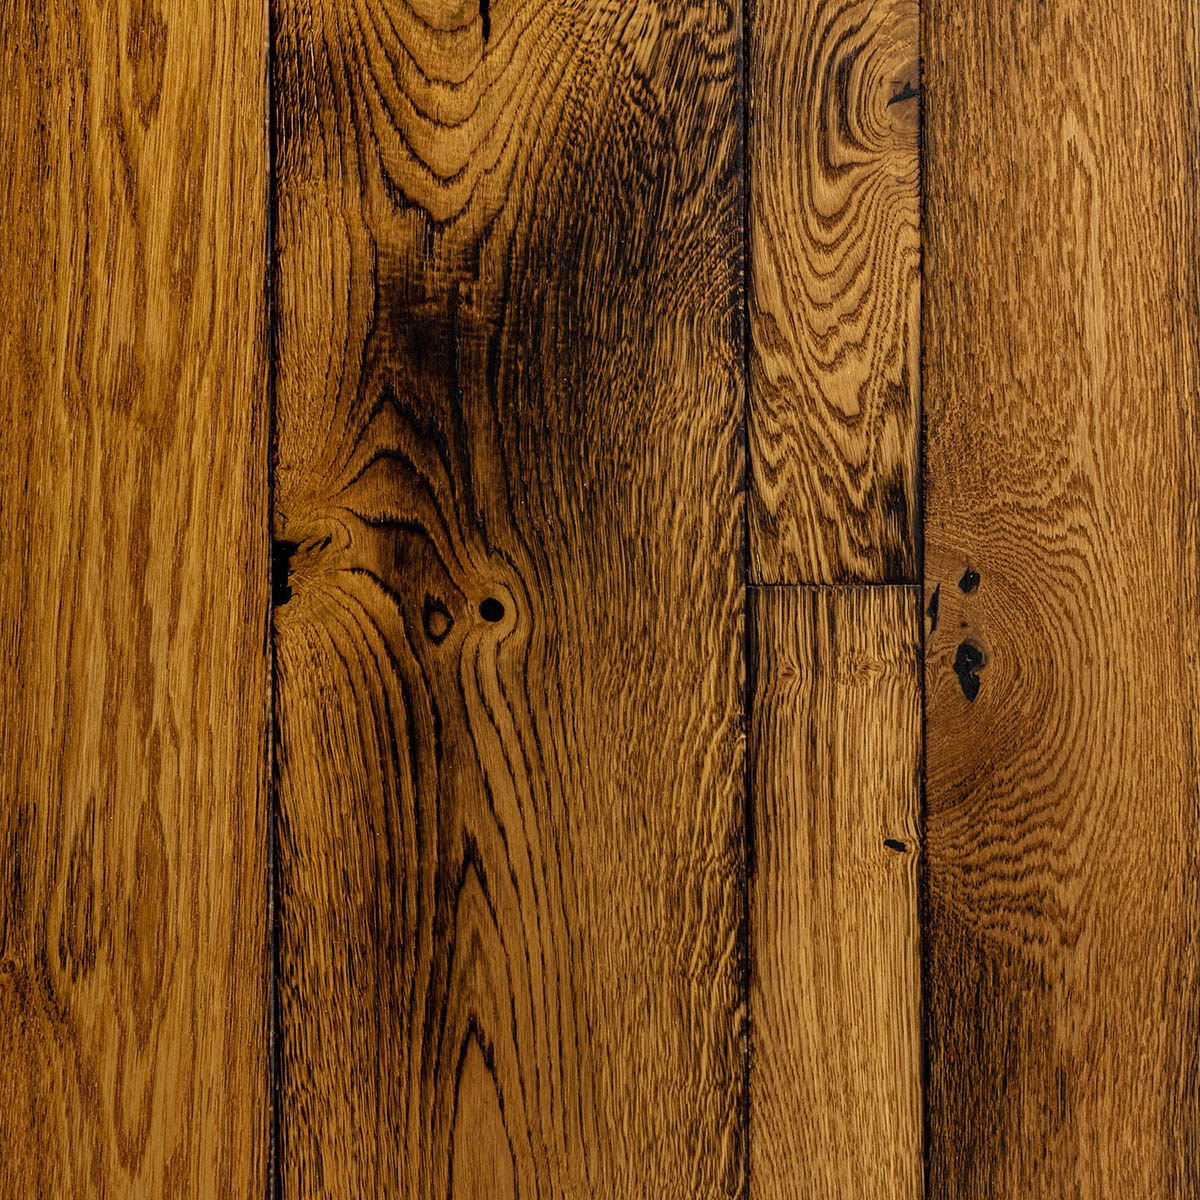 stancliffe - Rustic Grade Mixed Width Plank Floor